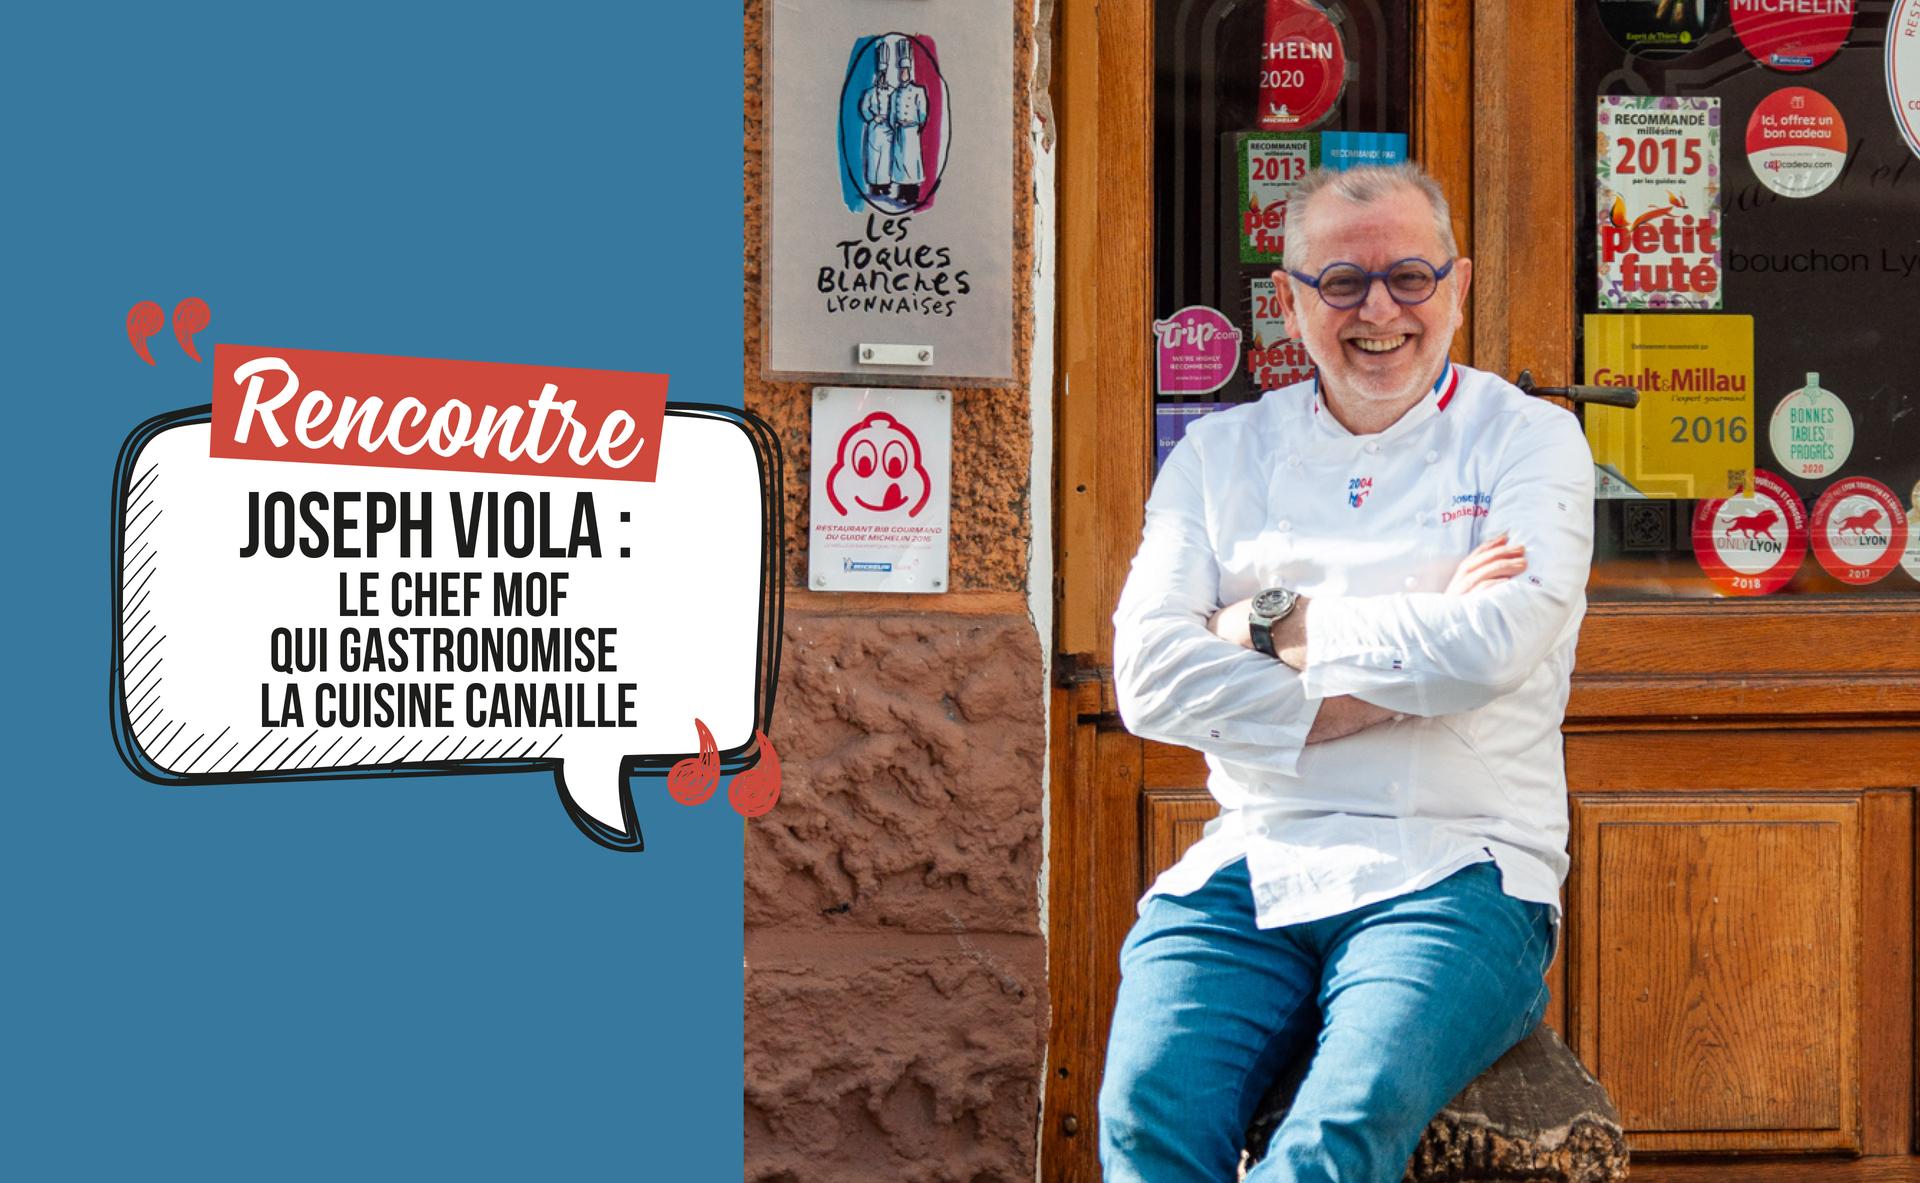 Joseph Viola : le chef MOF qui gastronomise la cuisine canaille